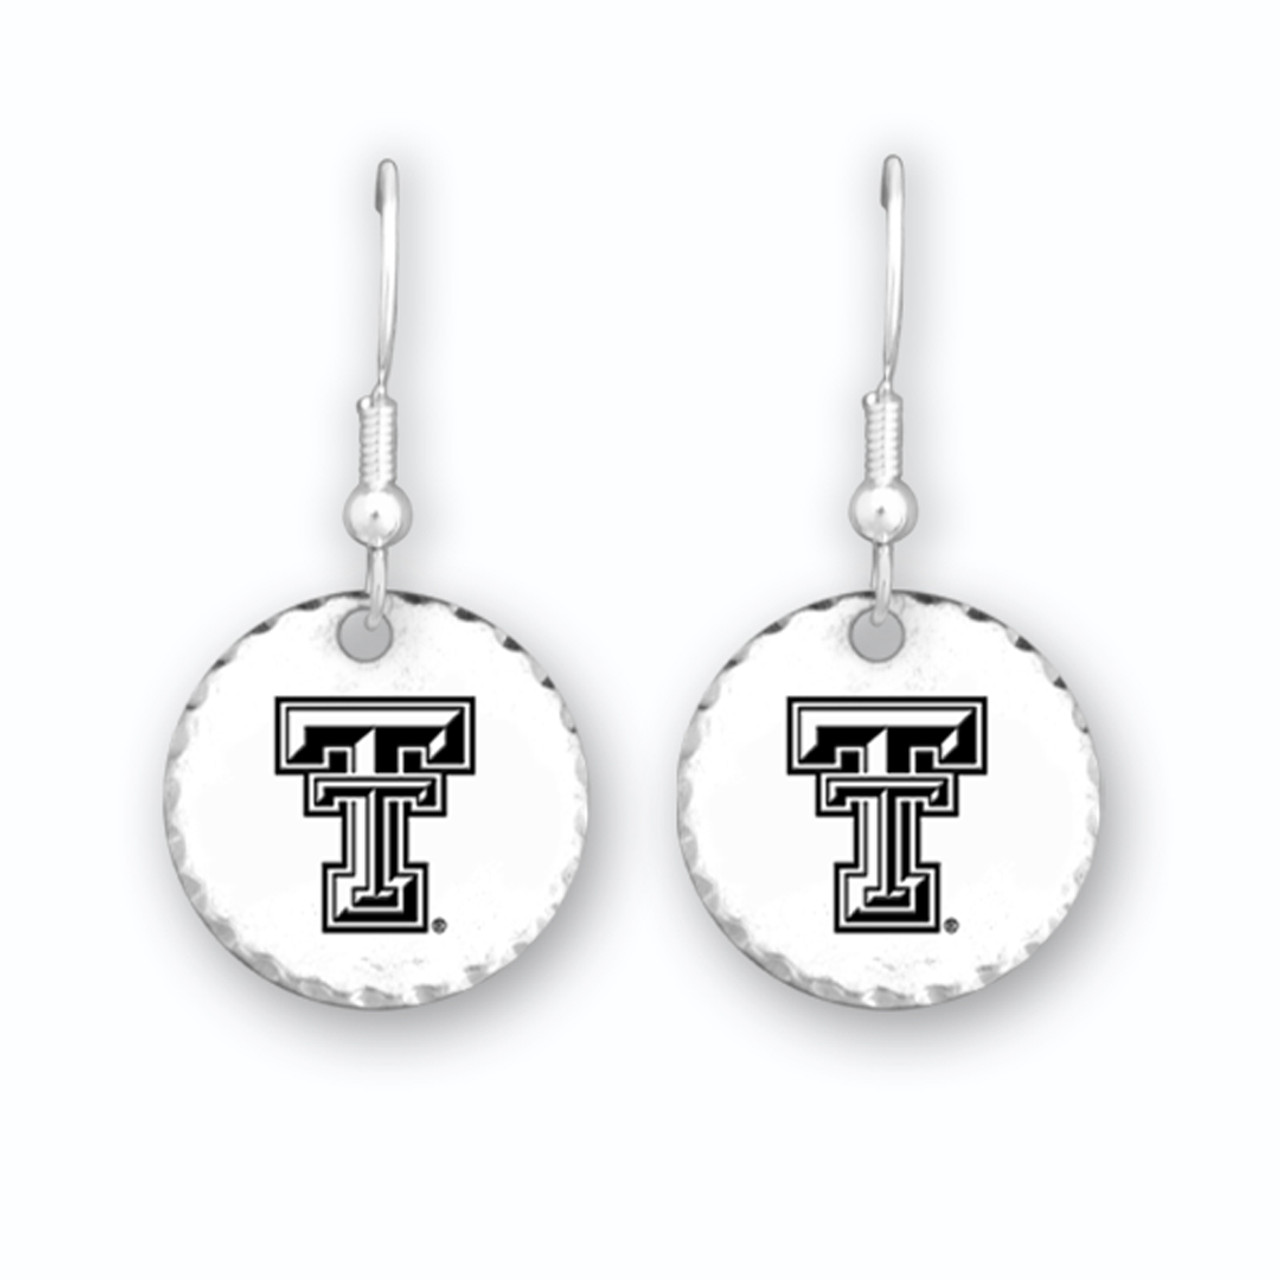 Texas Tech Raiders Earrings- Stamped Disk